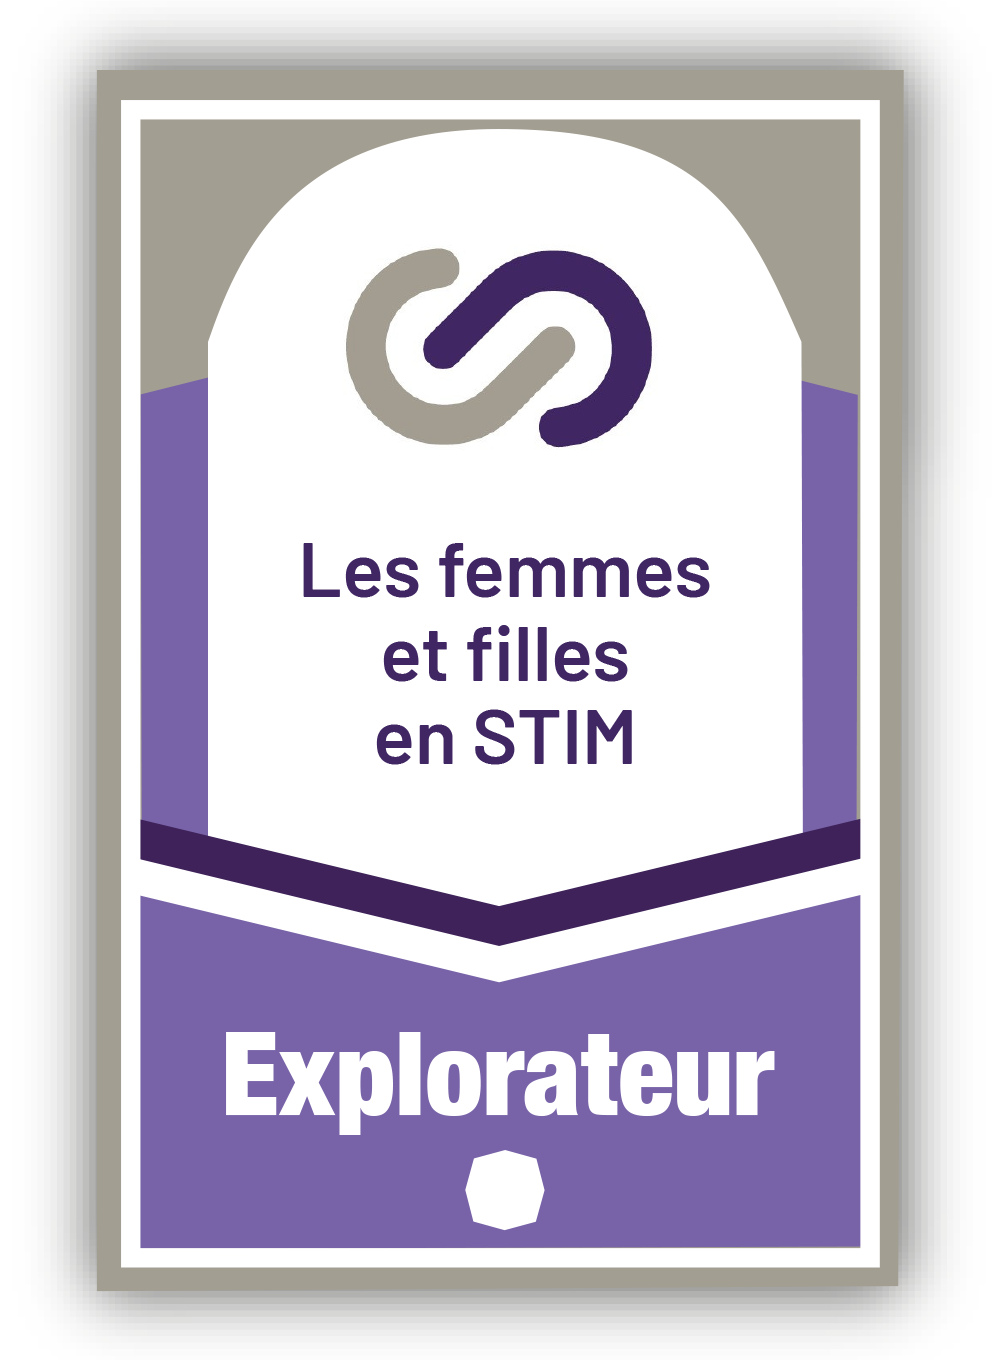 Les femmes et filles en STIM 1 - Explorateur